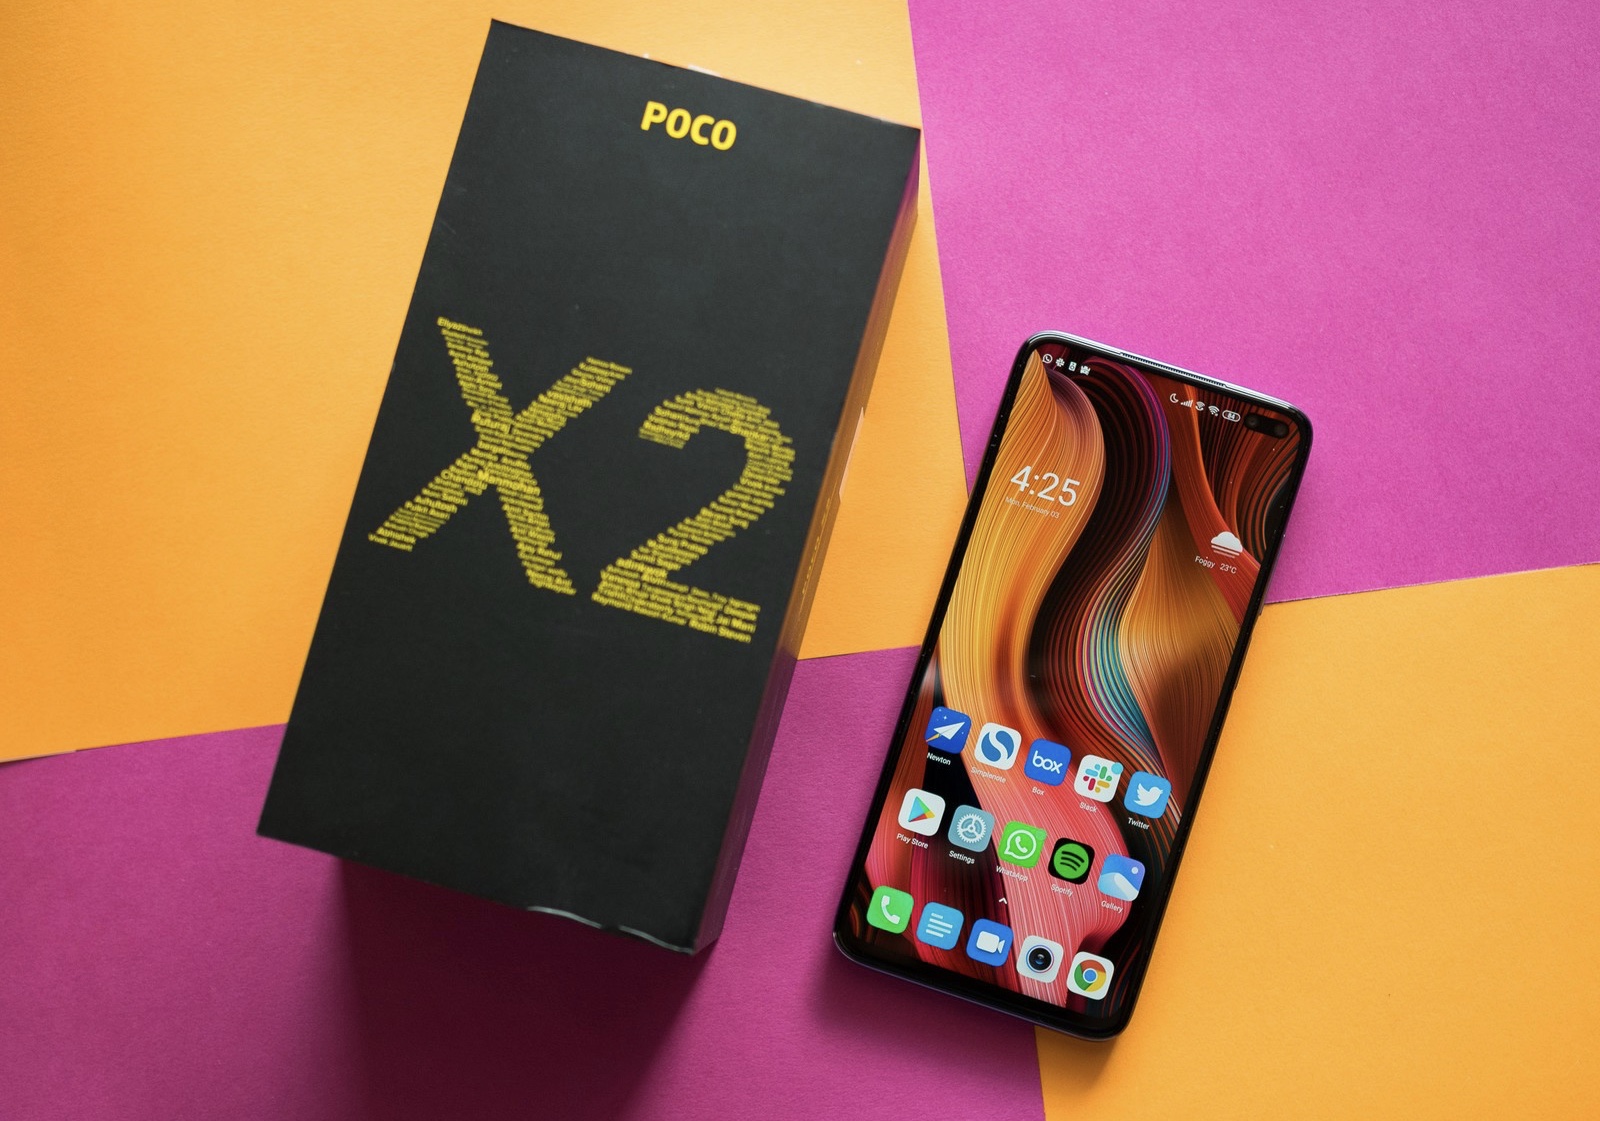 POCO X2 представлен официально: дисплей 120 Гц и 64-Мп камера за 225 долларов